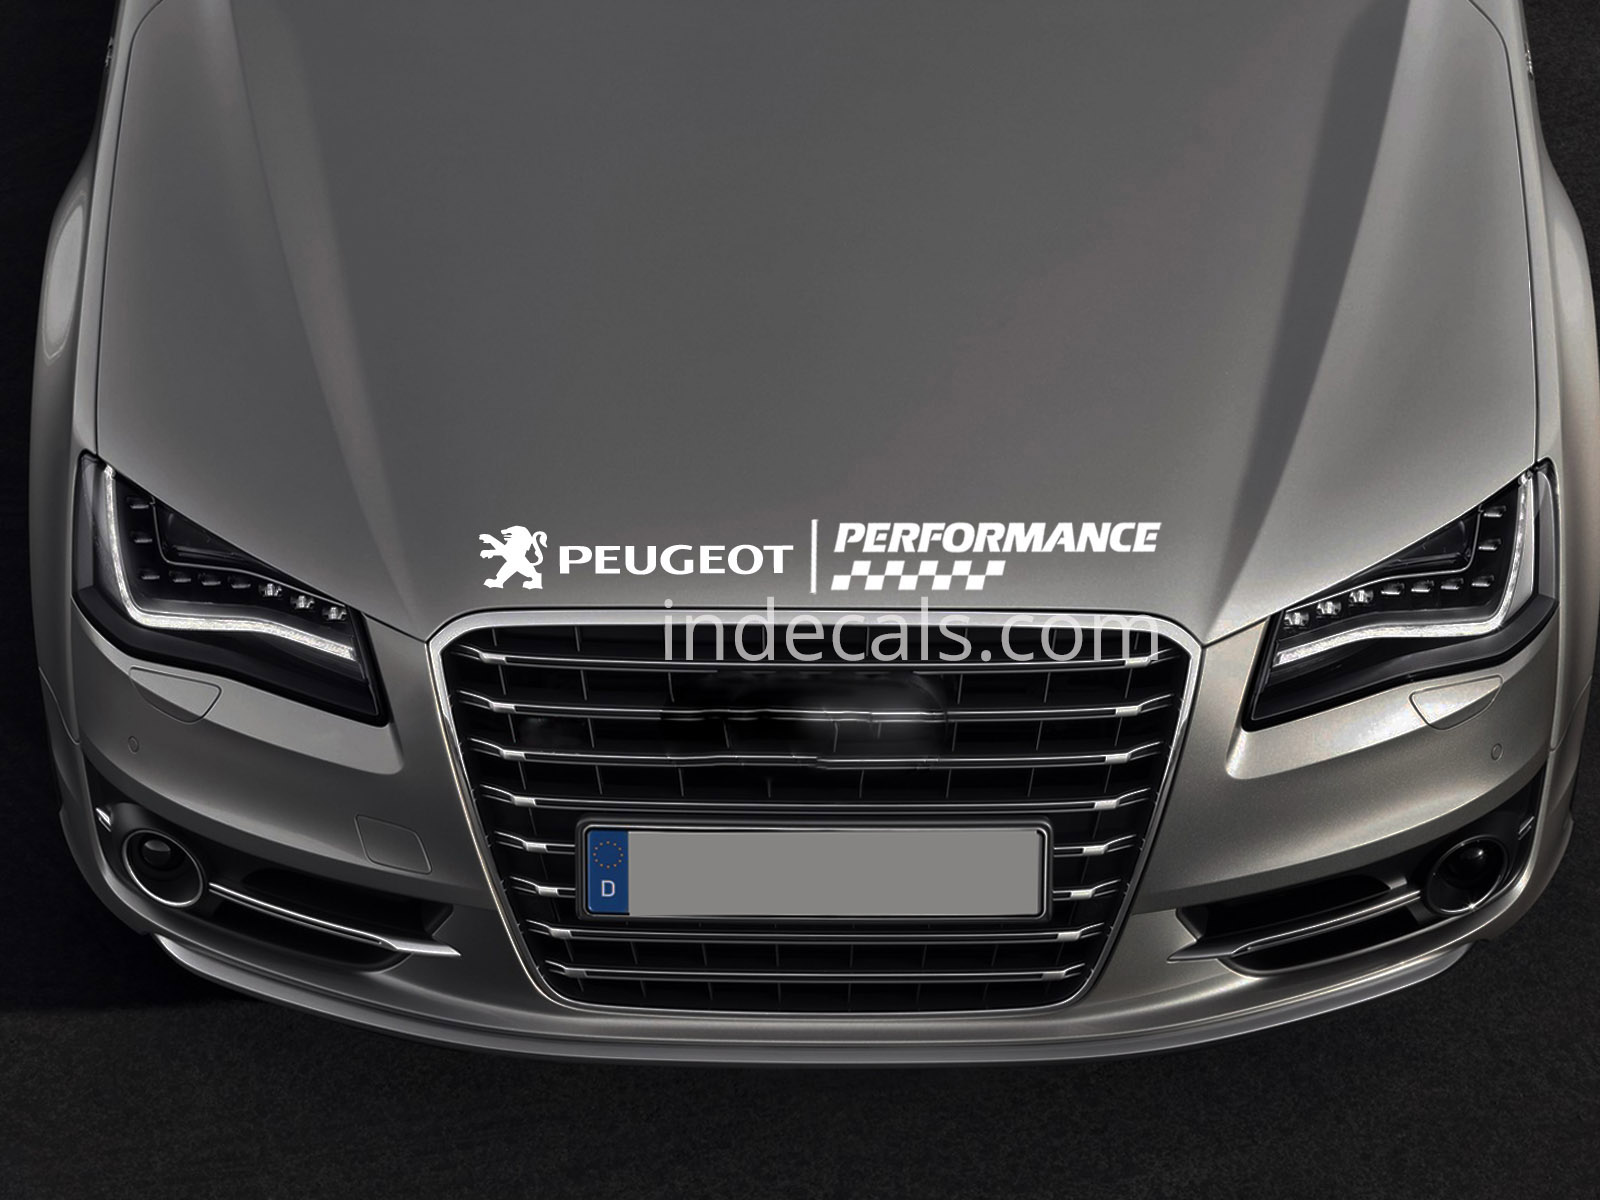 1 x Peugeot Peformance Sticker for Bonnet - White